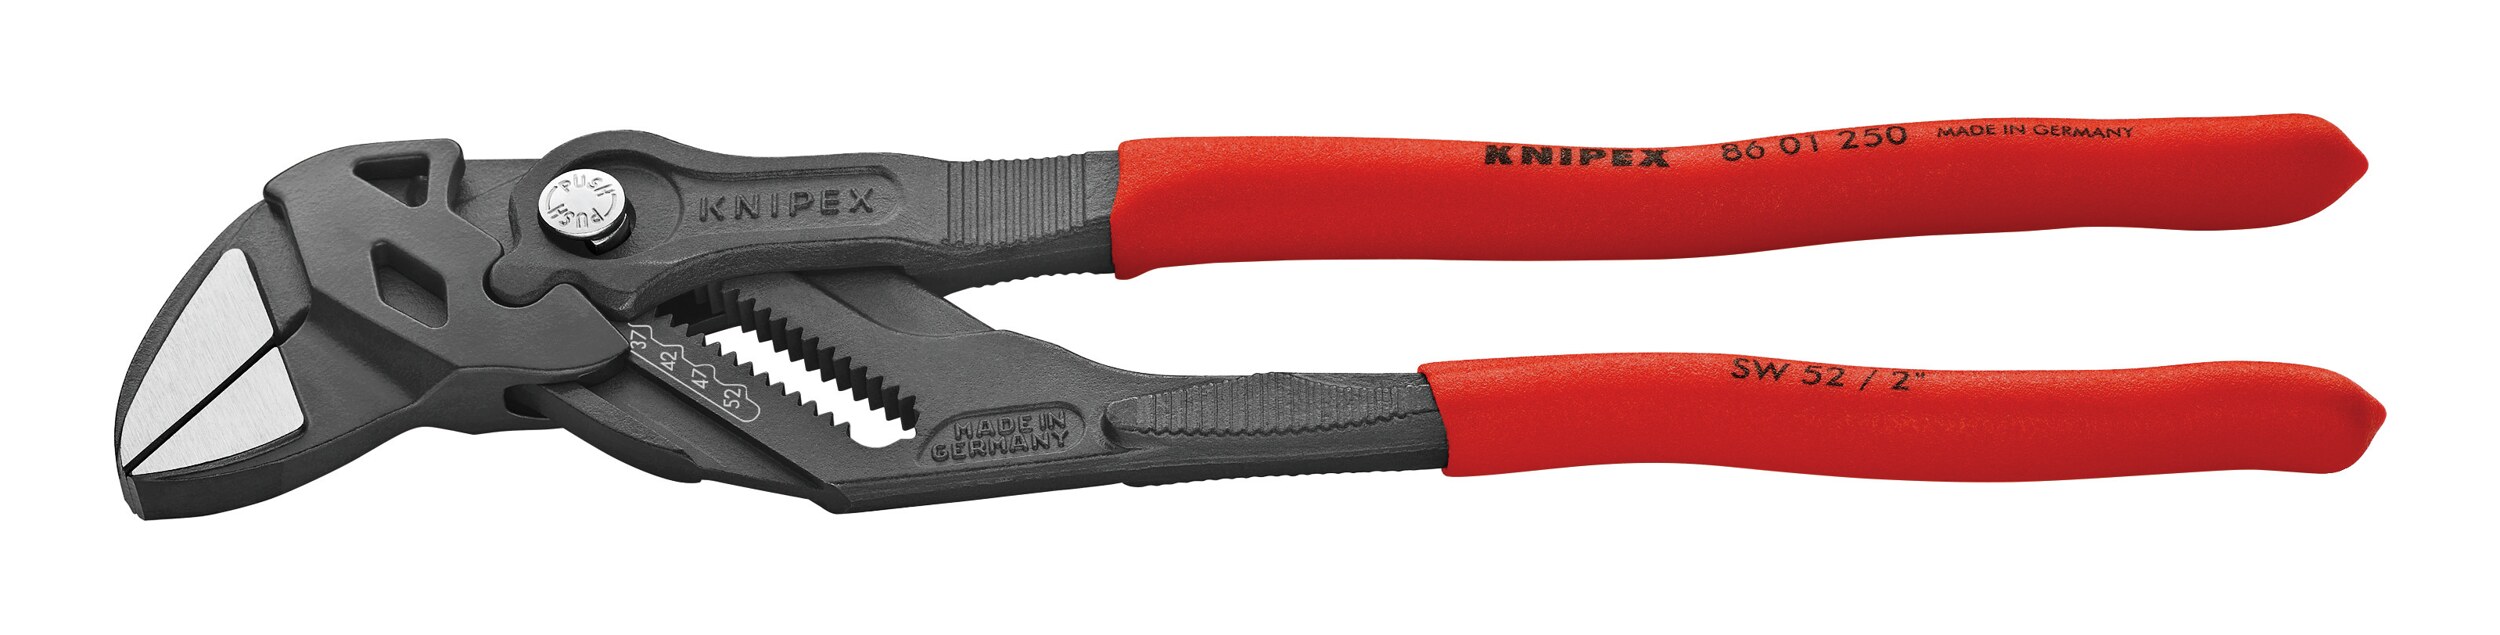 KNIPEX Zange Zangenschlüssel 60 mm - Handwerkzeuge & Zubehör